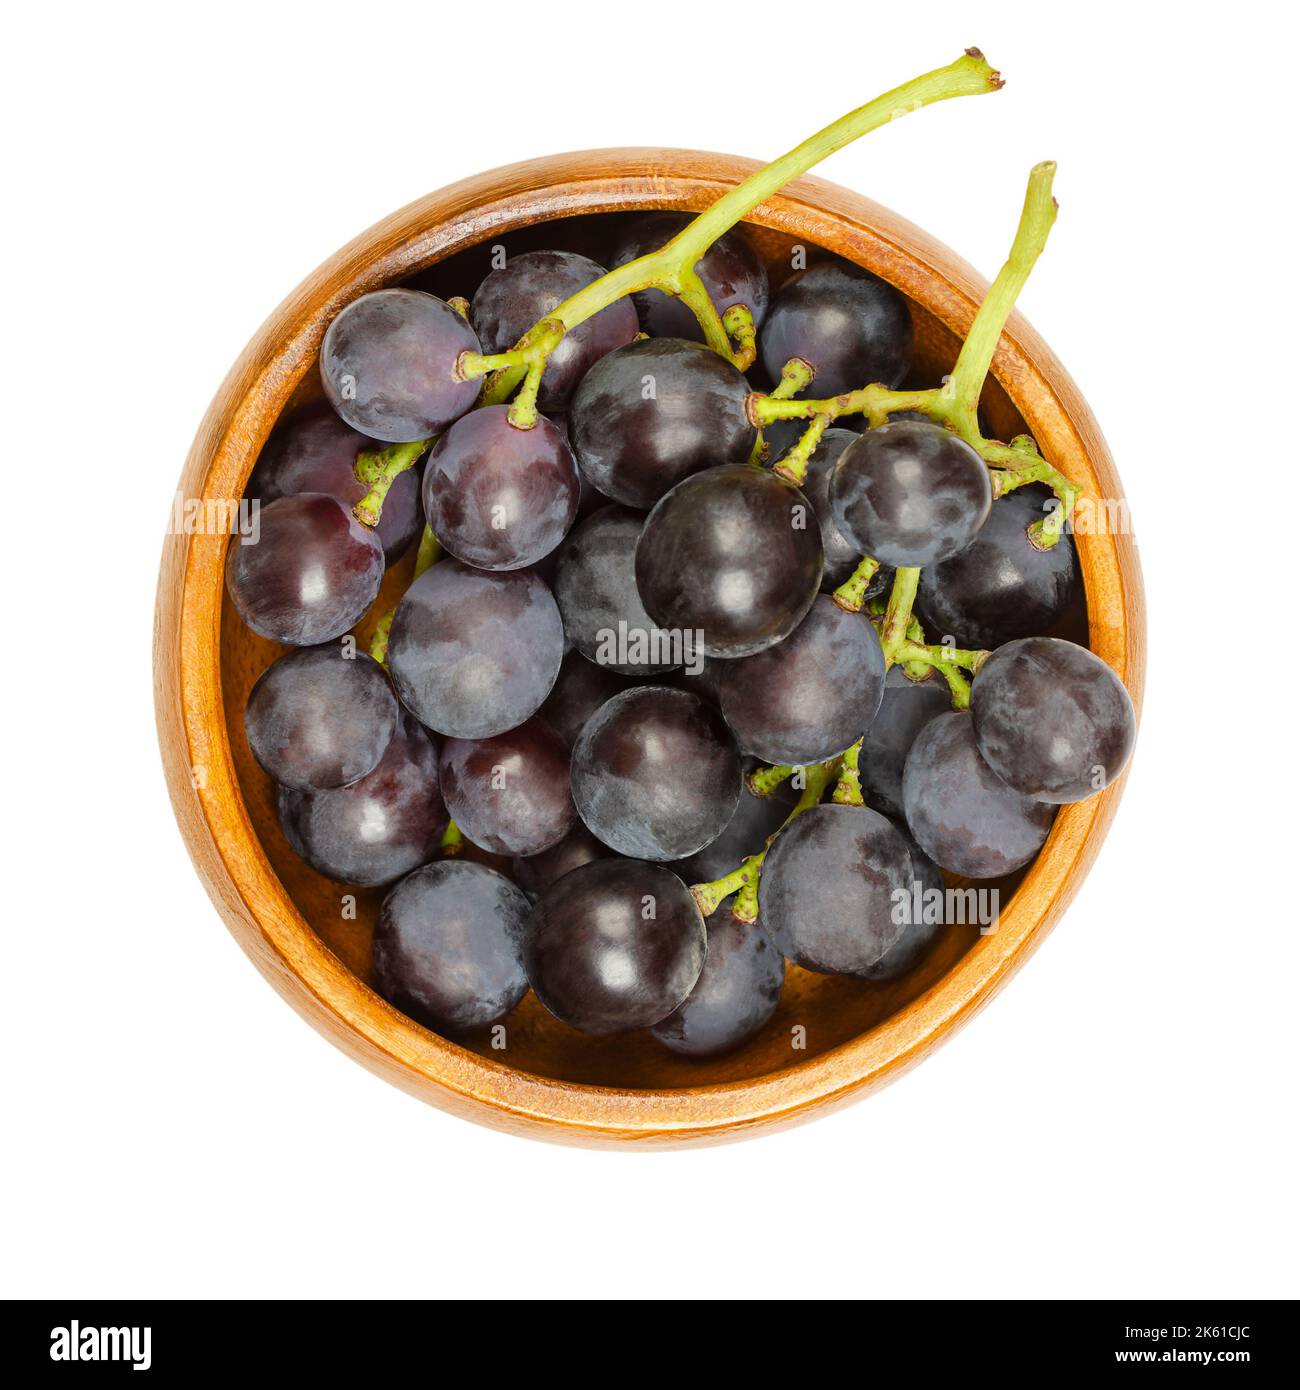 Gewöhnliche Weinreben, in einer Holzschale. Frisch gepflückte Reben aus reifen Wildtrauben, Vitis vinifera, mit kleinen dunkelvioletten Trauben. Stockfoto